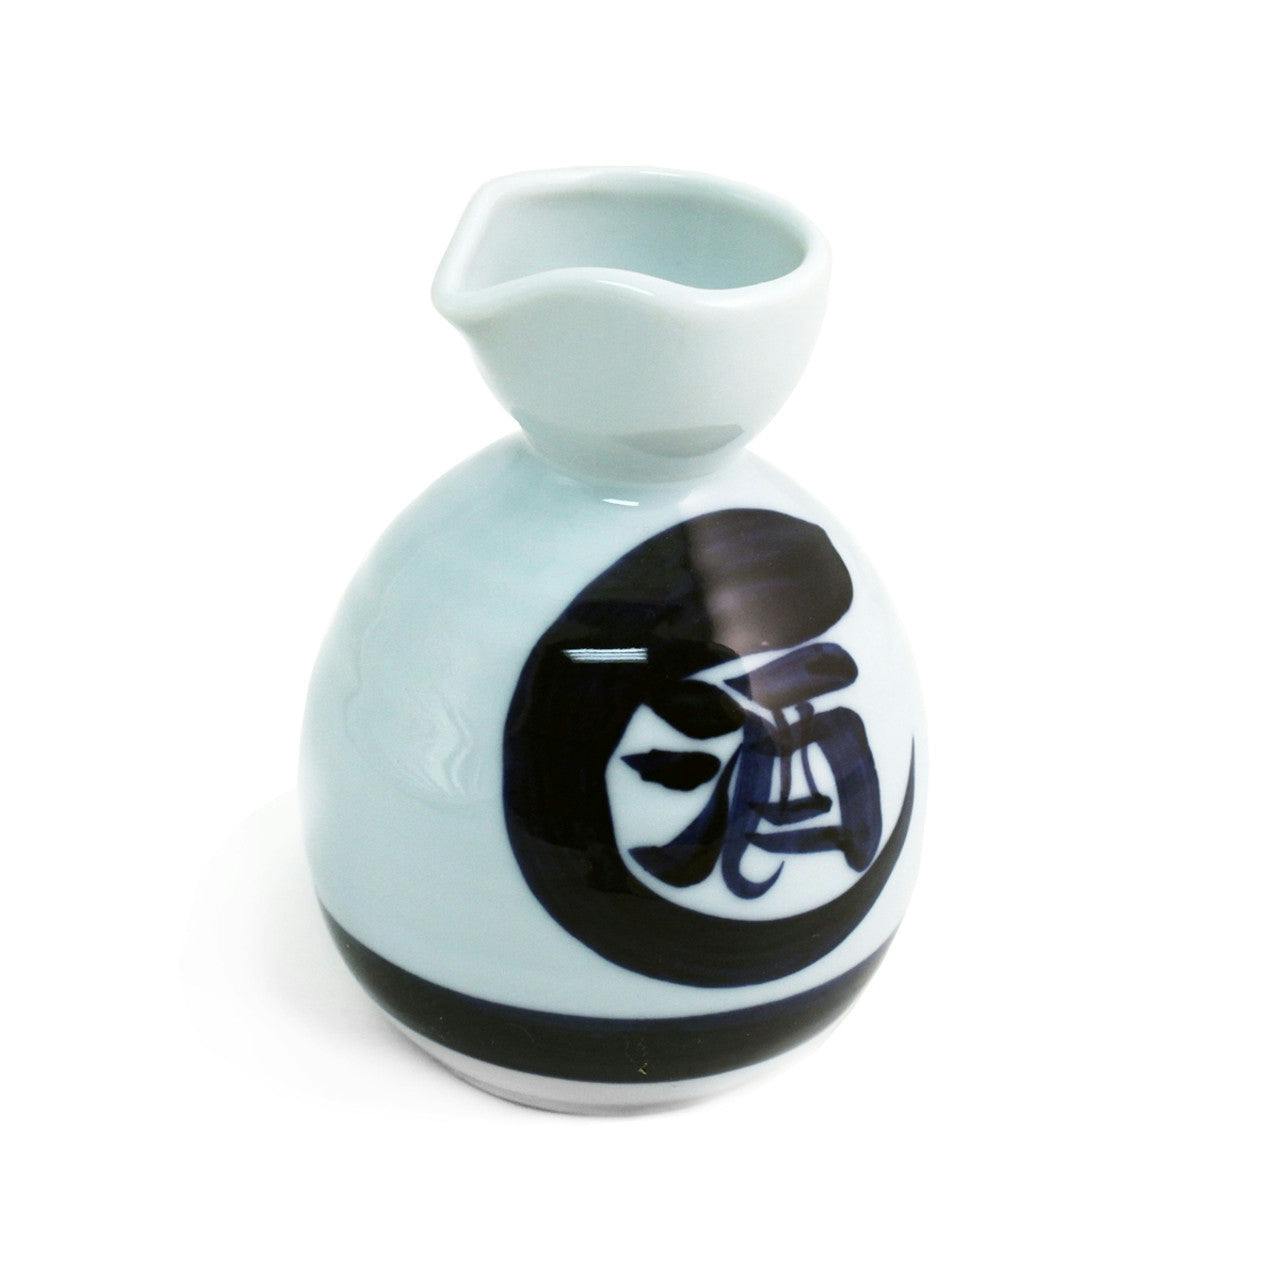 Kanji Ceramic Sake Server 11 fl oz 汉字陶瓷清酒酒壶